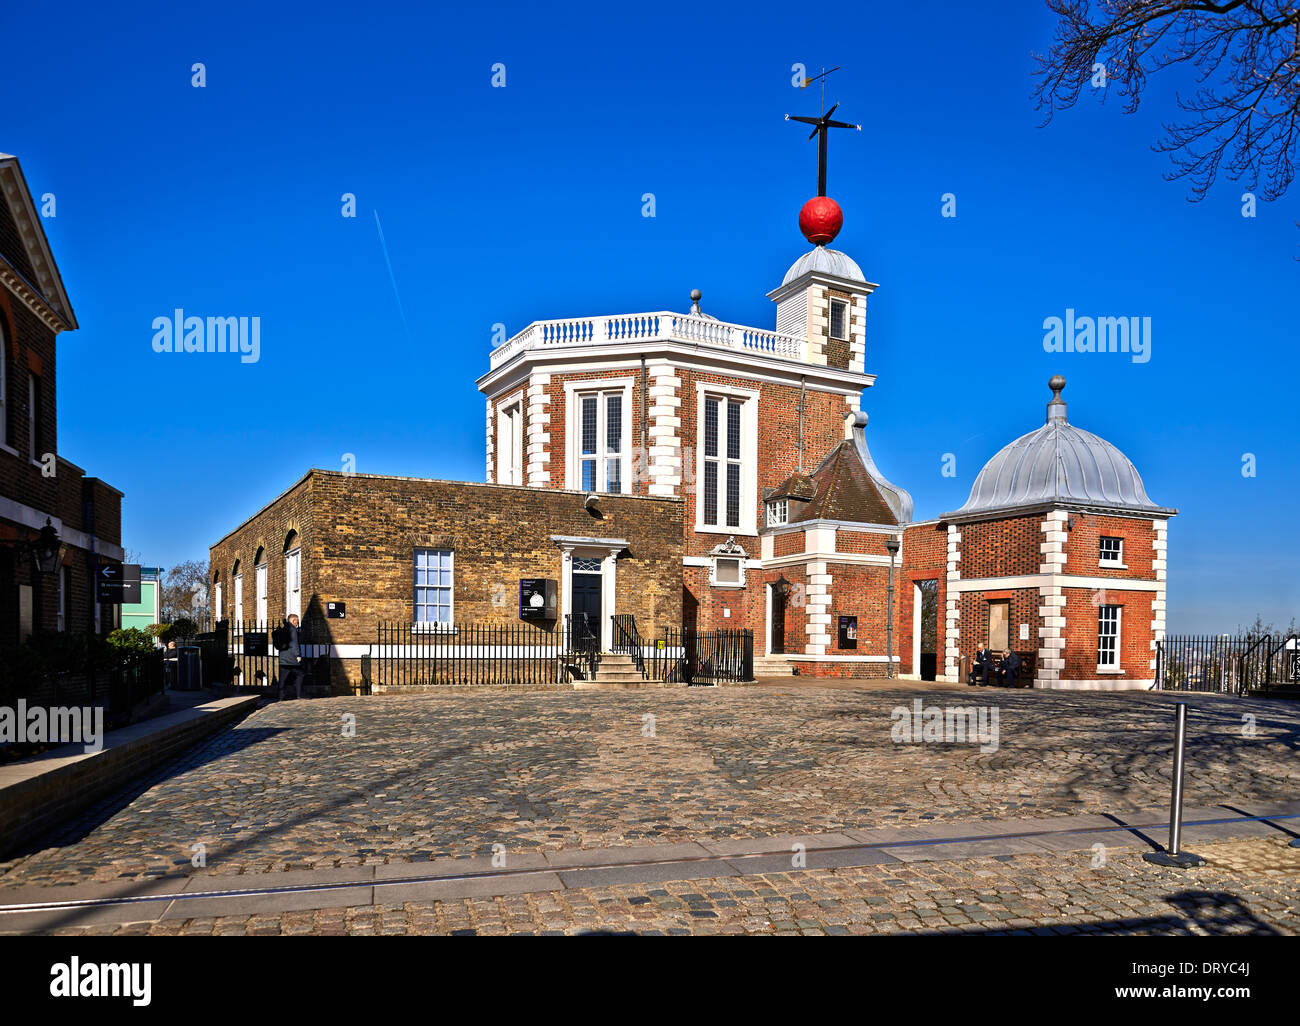 Greenwich ist bemerkenswert für seine maritime Geschichte und seinen Namen auf dem Nullmeridian (0° Längengrad) Stockfoto